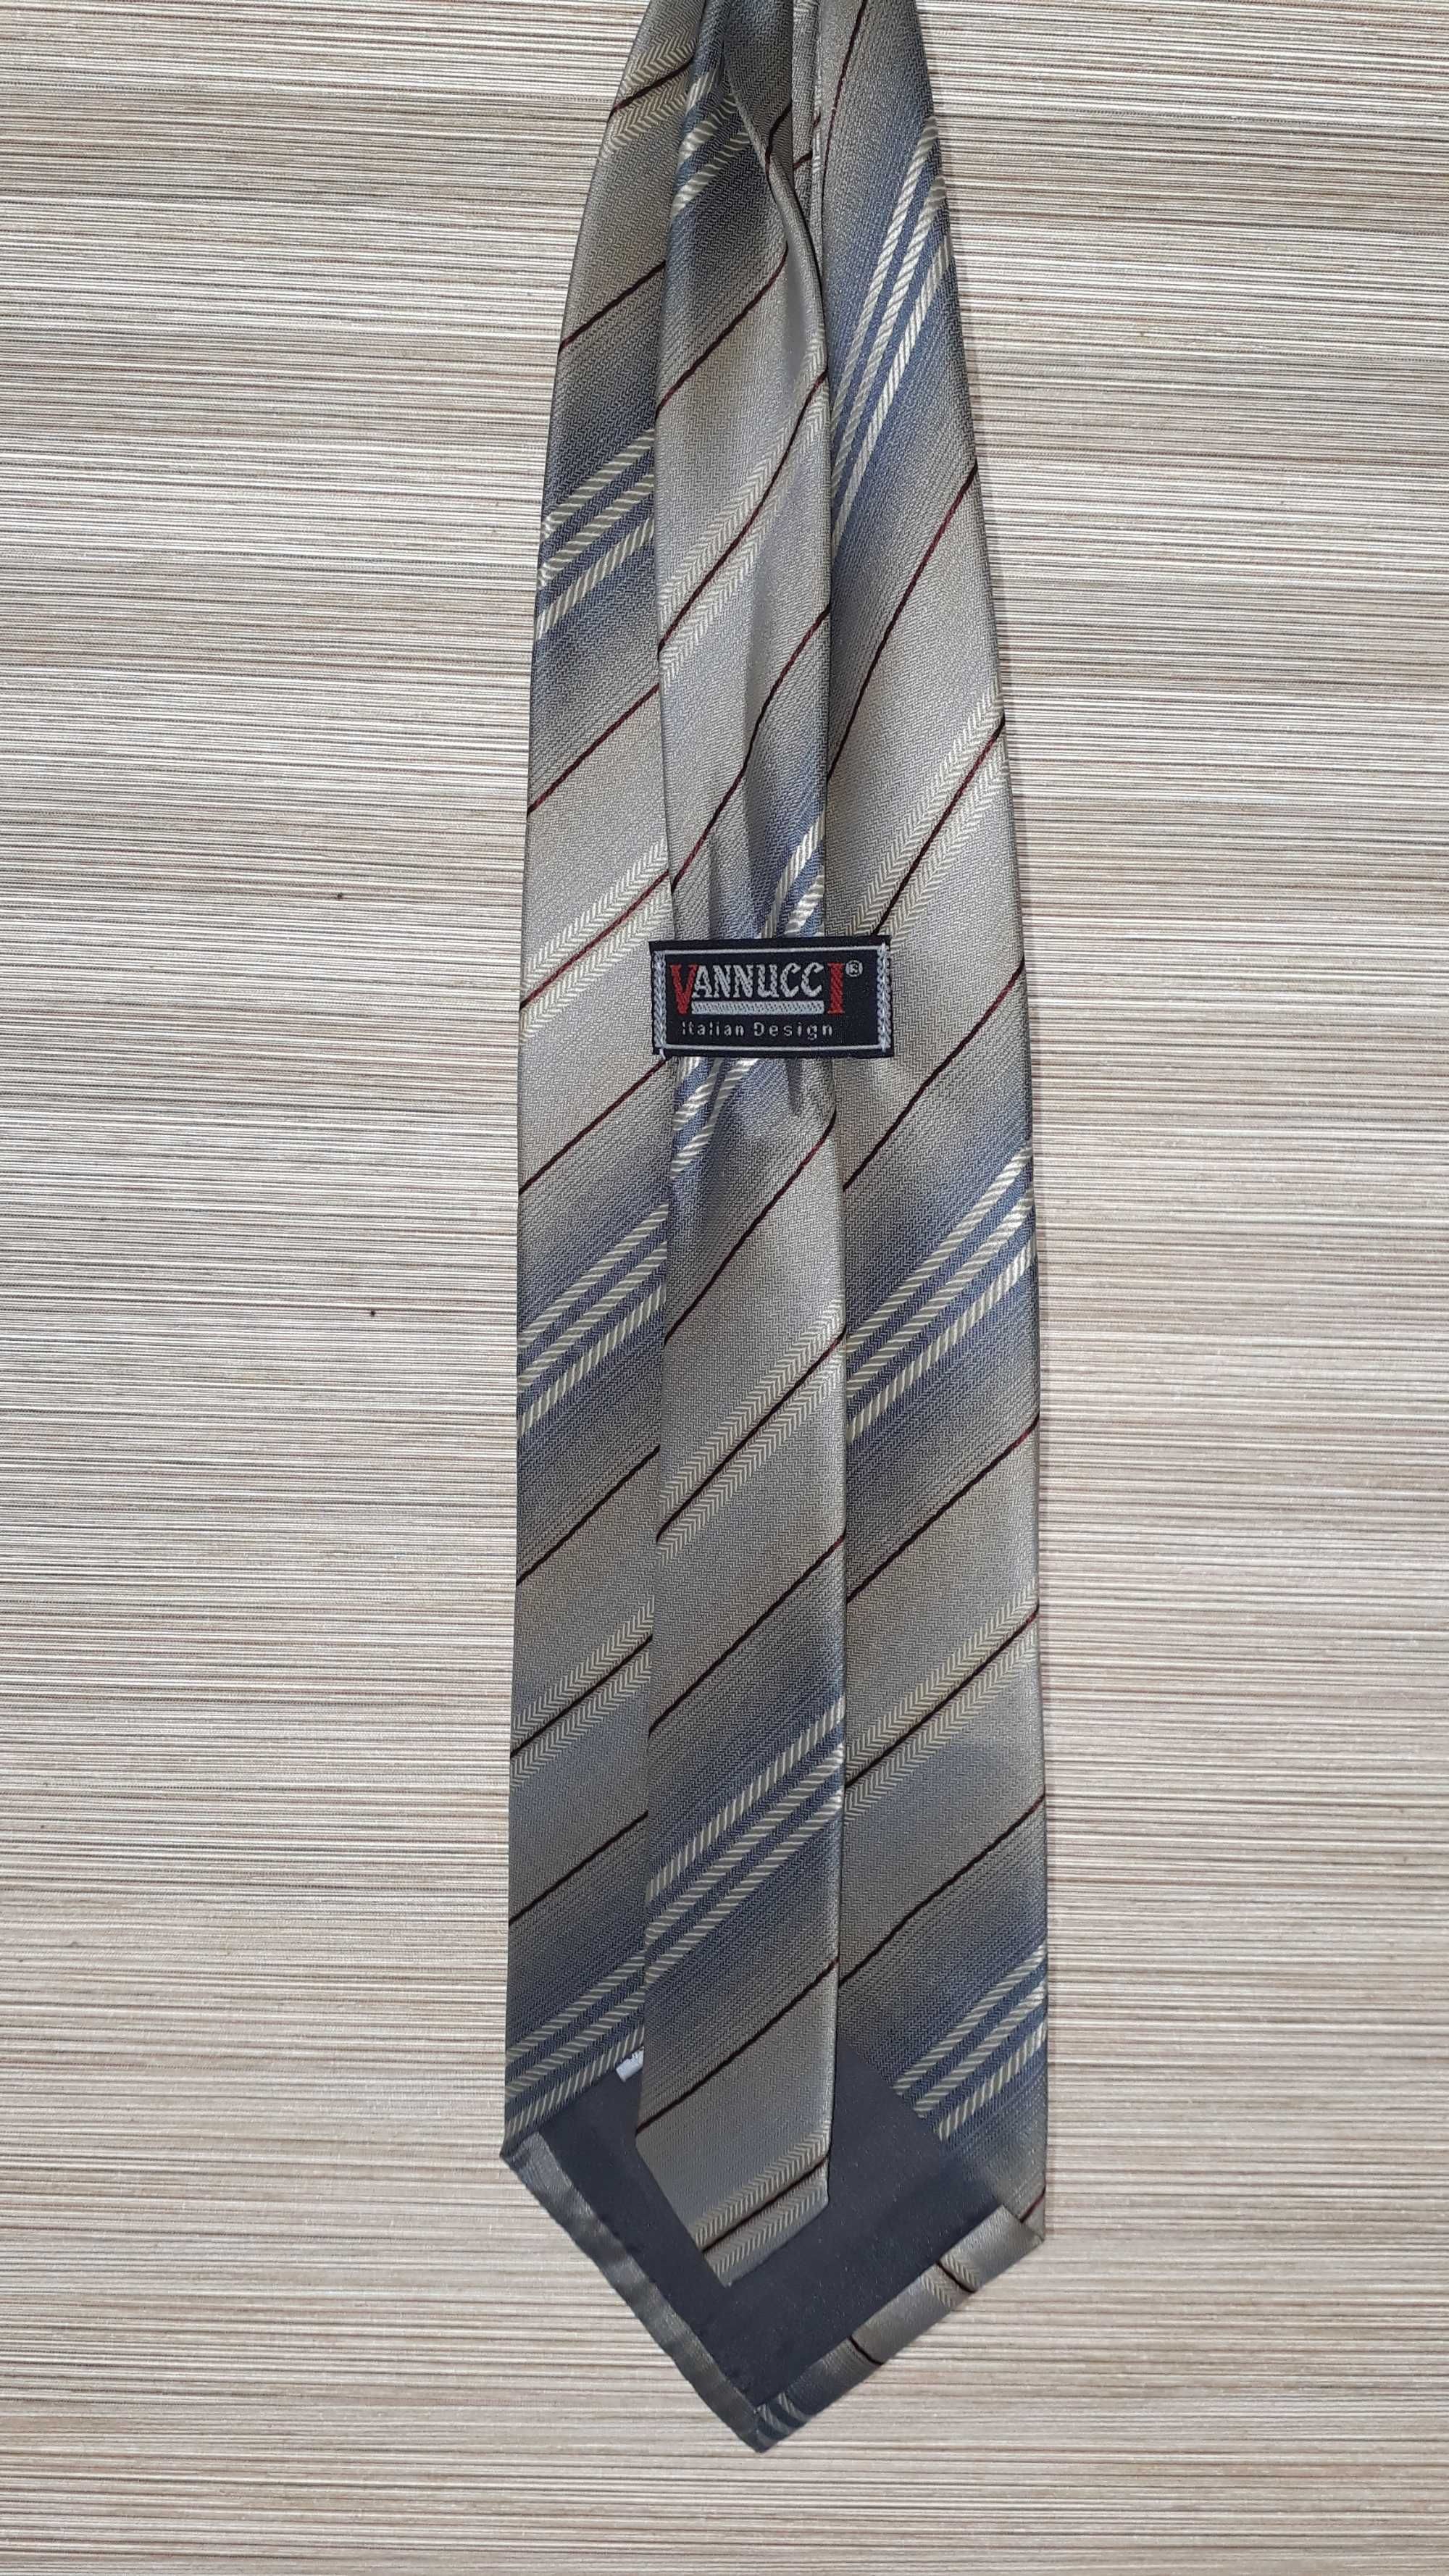 Krawat męski marki Vannucci
Italian design